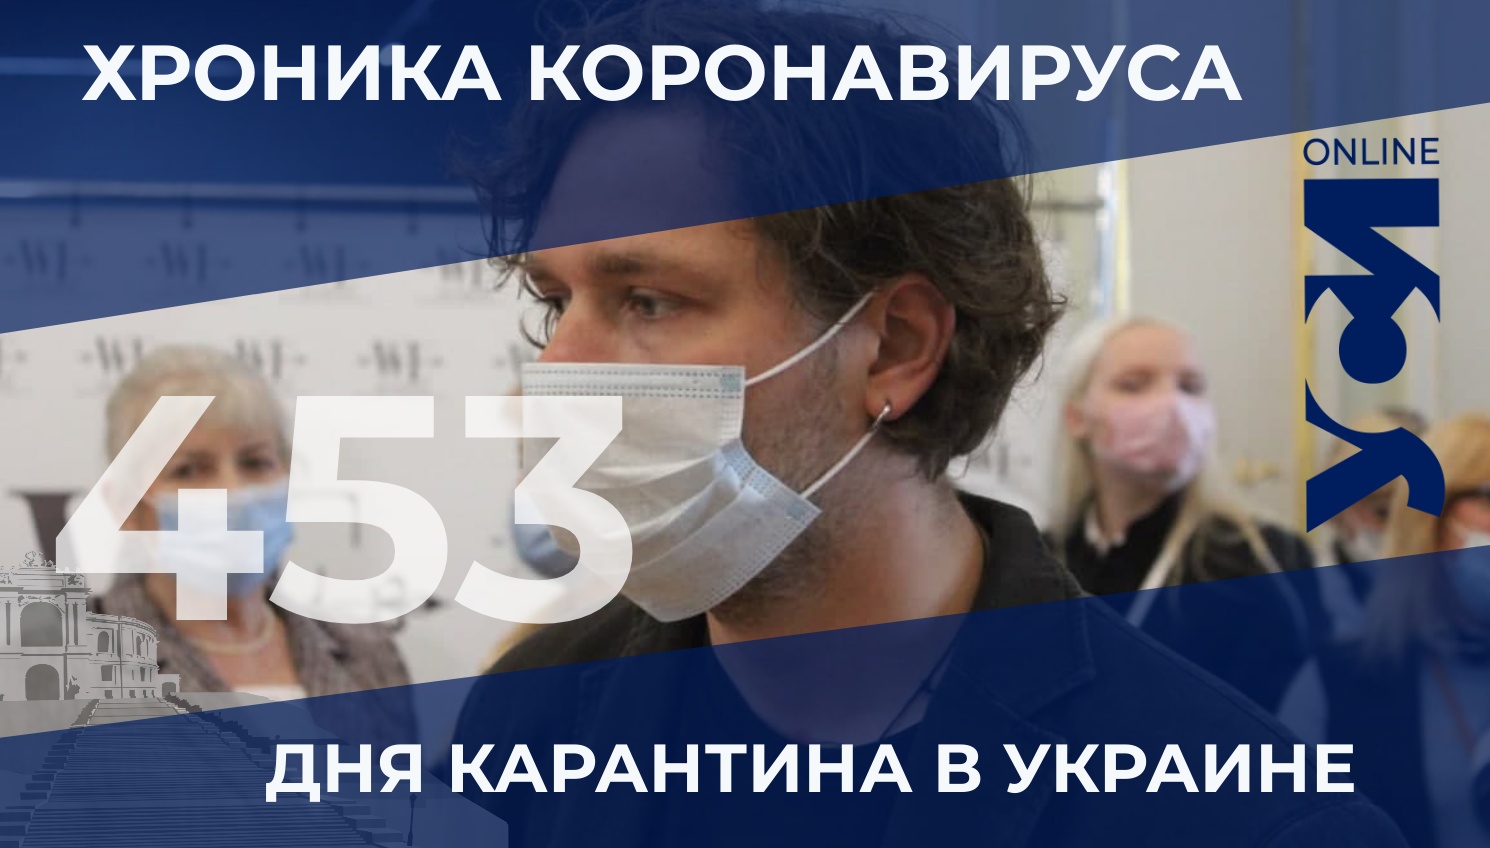 Хроники пандемии: в Одесской области коронавирус отступает «фото»